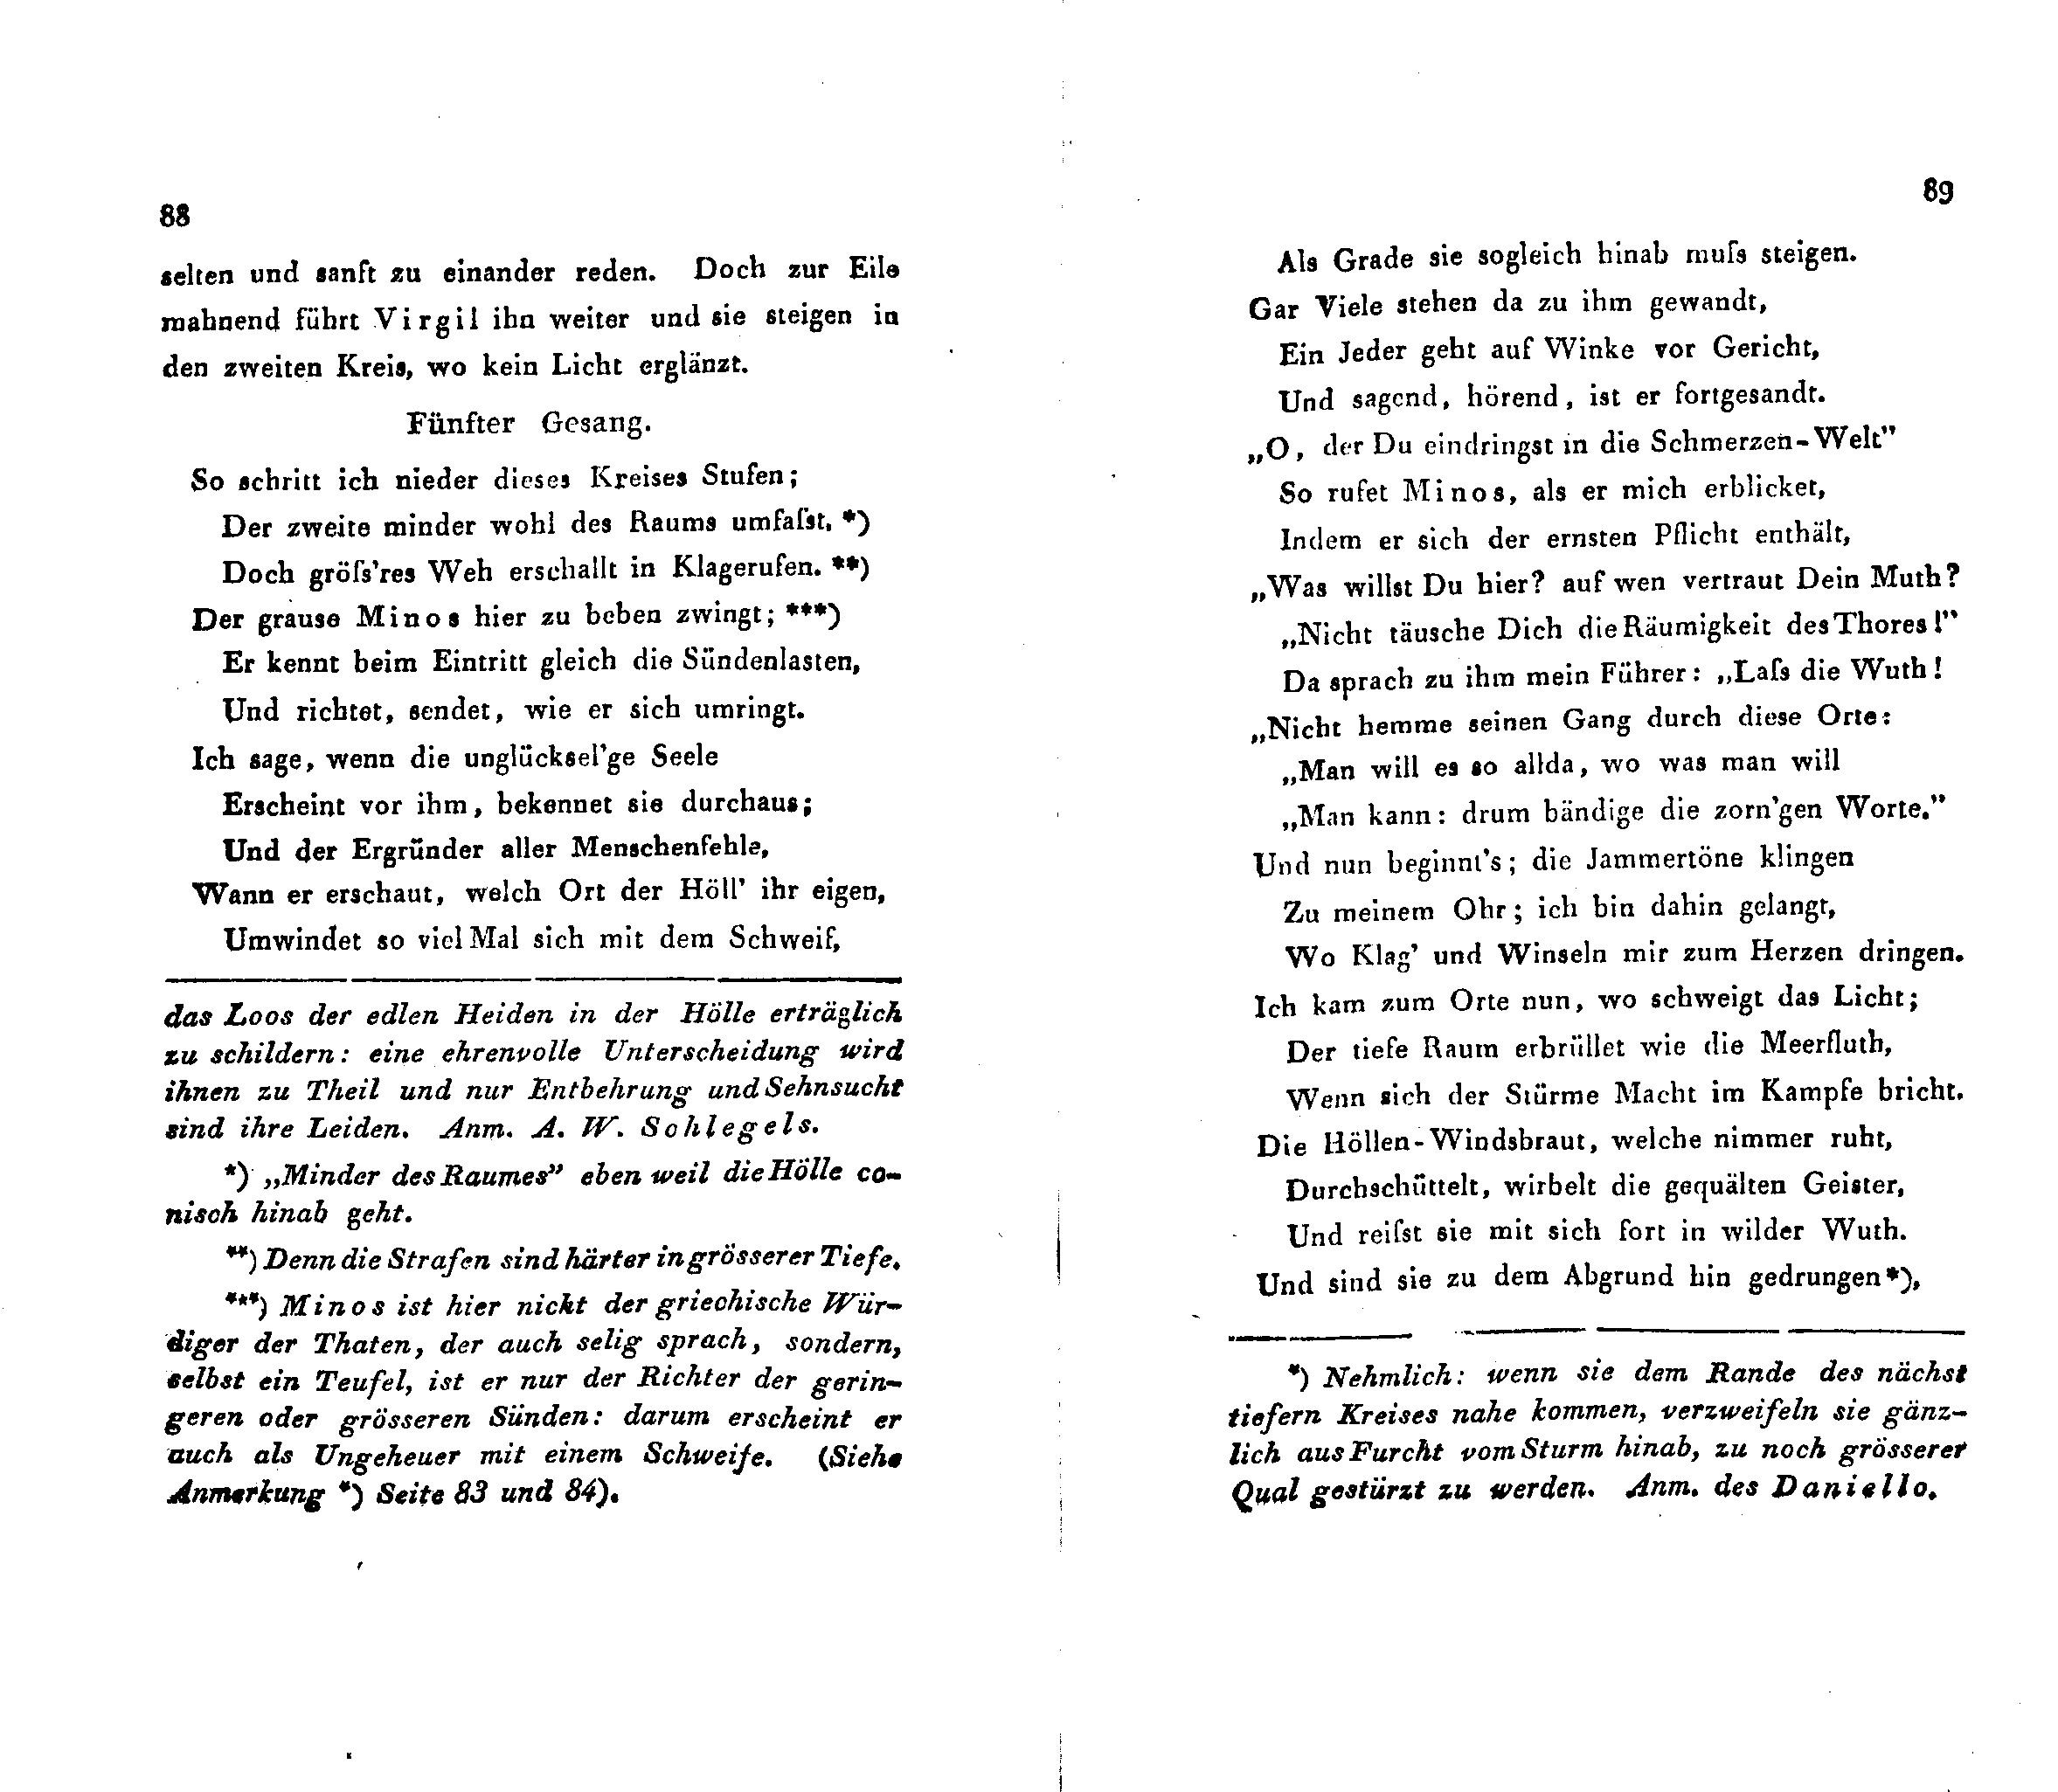 Ueber Dante Alighieri, seine Zeit und seine Divina Comedia [1] (1824) | 12. (88-89) Main body of text